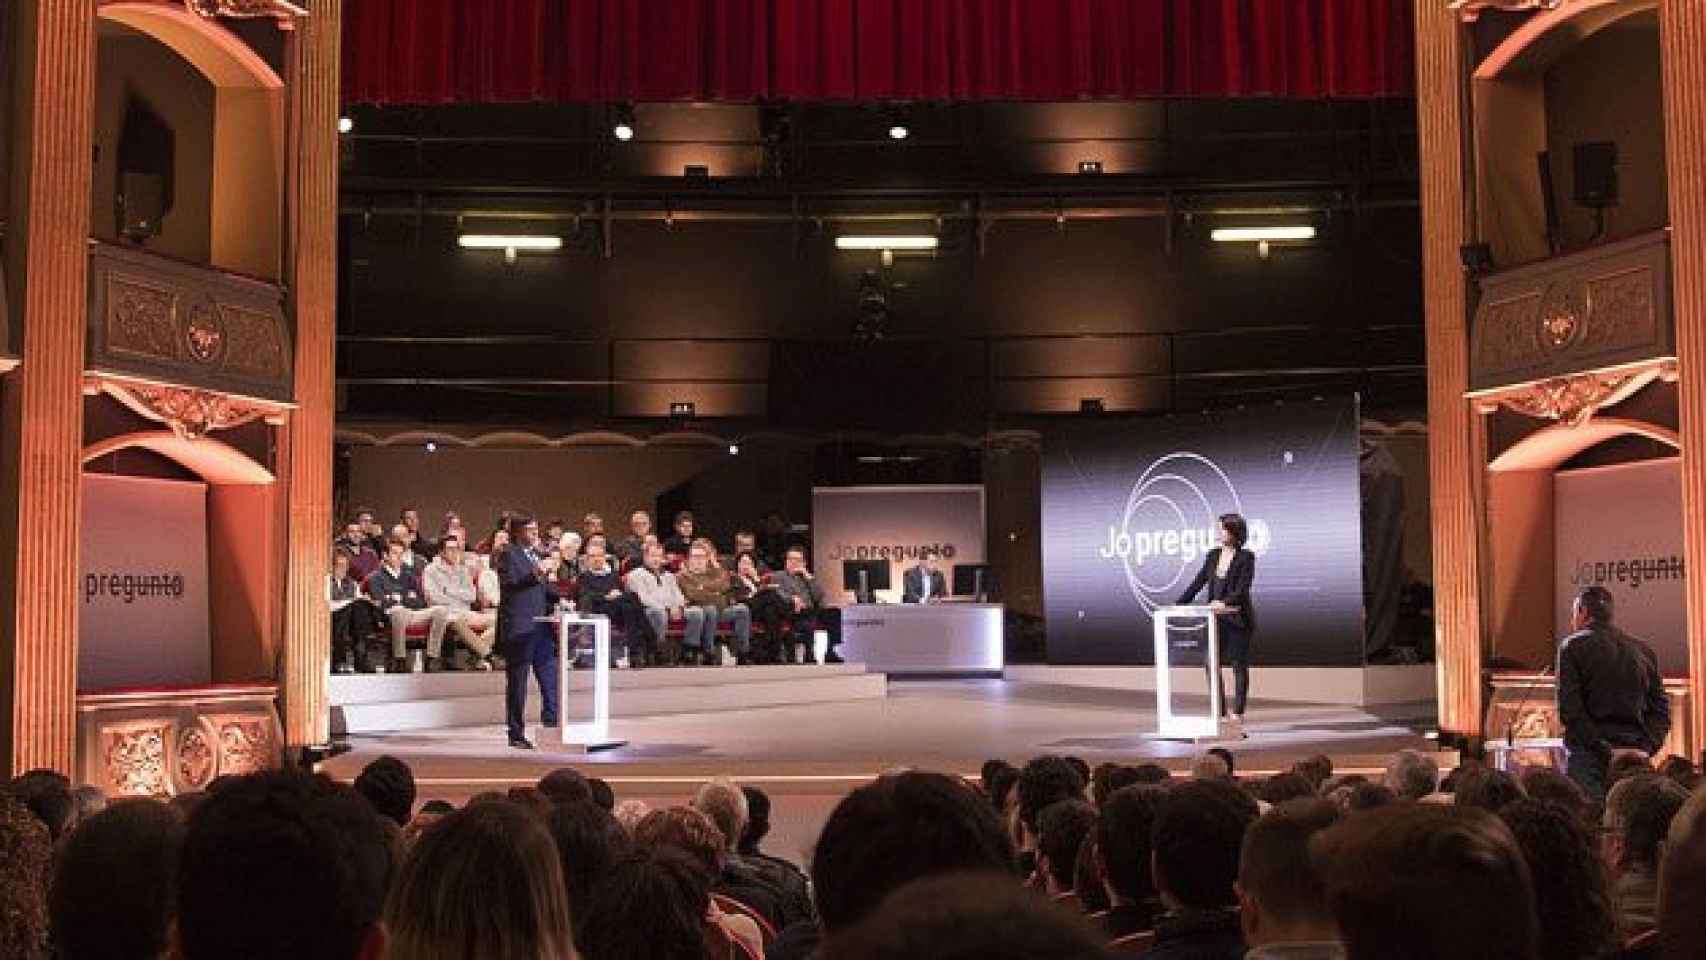 El presidente de la Generalitat, Carles Puigdemont, en el programa 'Jo pregunto' / TV3